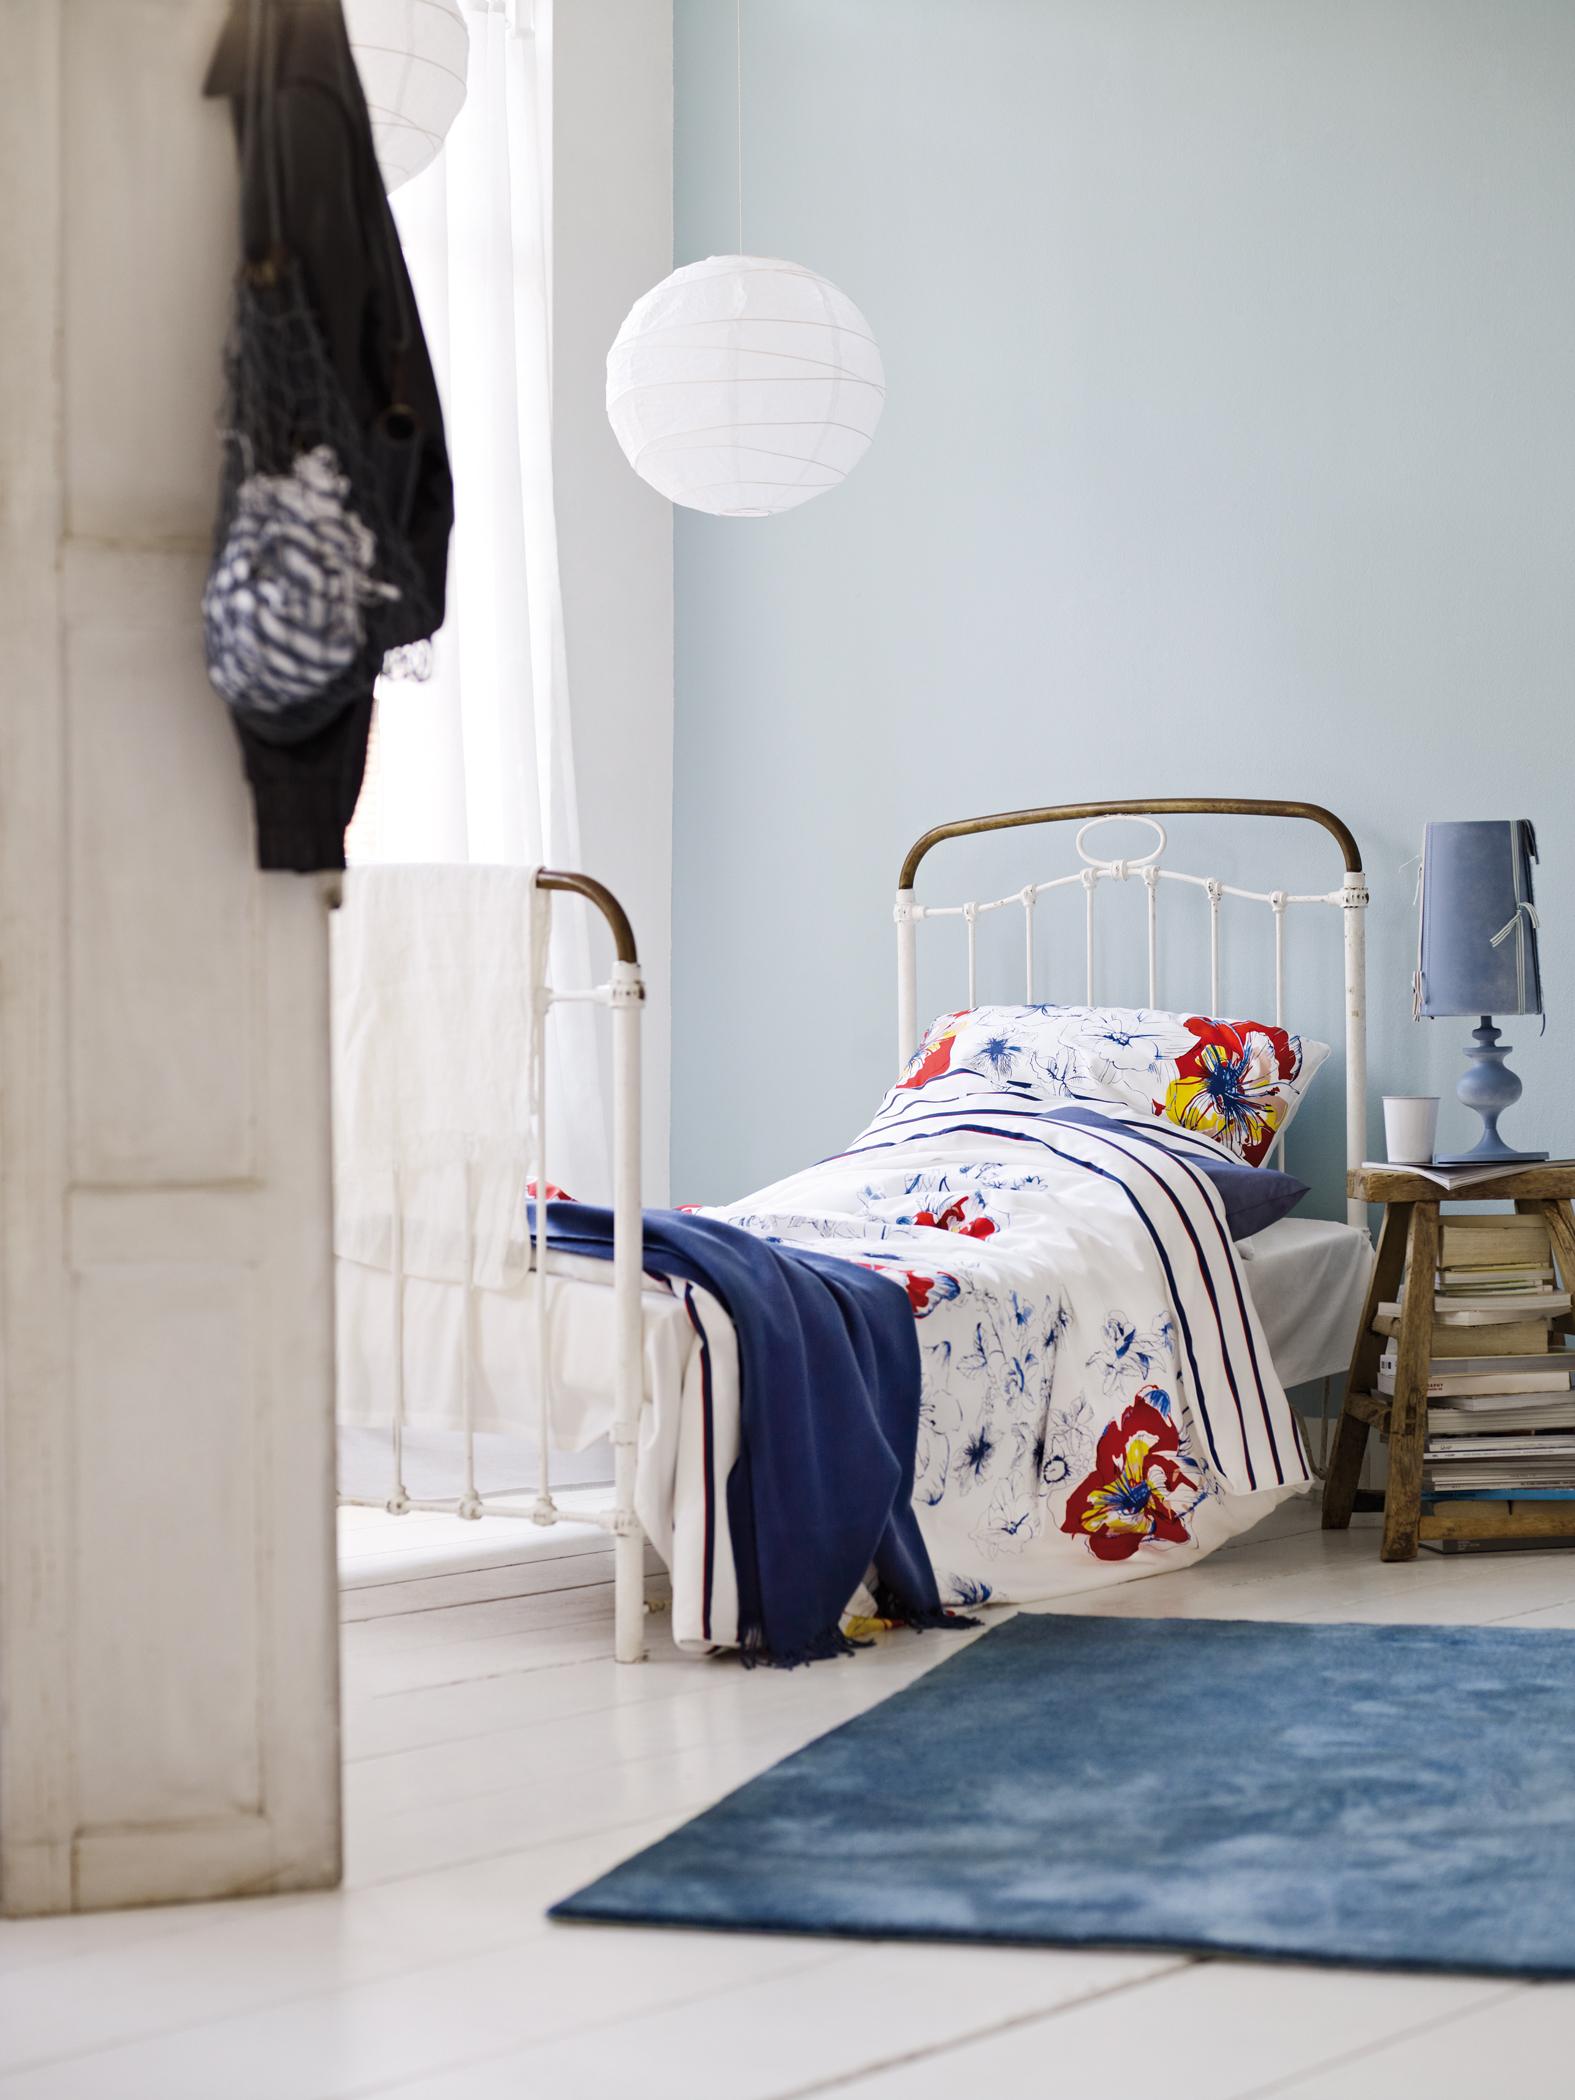 Antiker Holzhocker neben Vintage-Bett #vintage #stehlampe #blauewandgestaltung ©Esprit Home